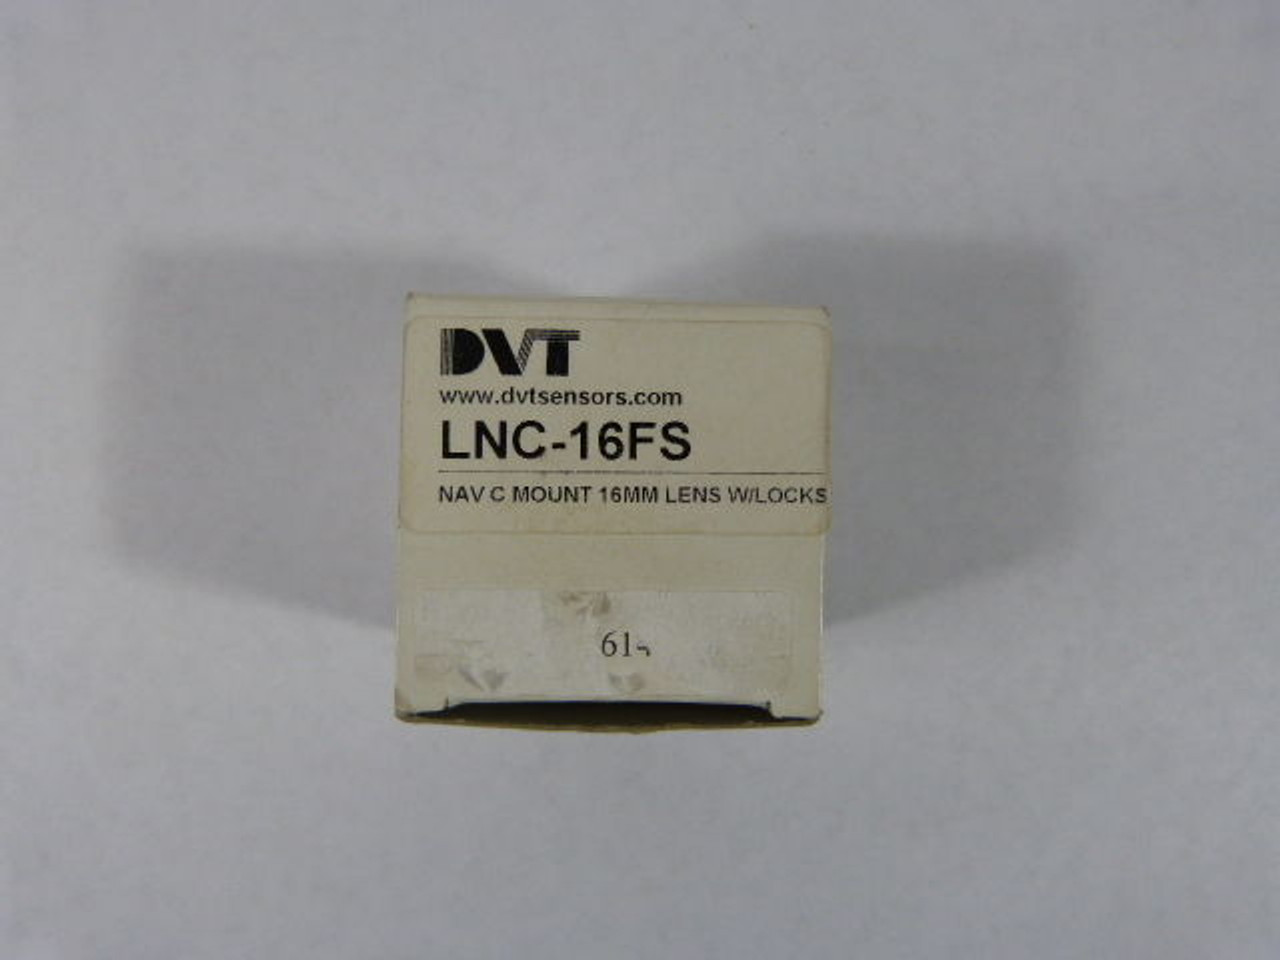 DVT Navitar LNC-16FS CCTV Lens 16mm F1.4 ! NEW !